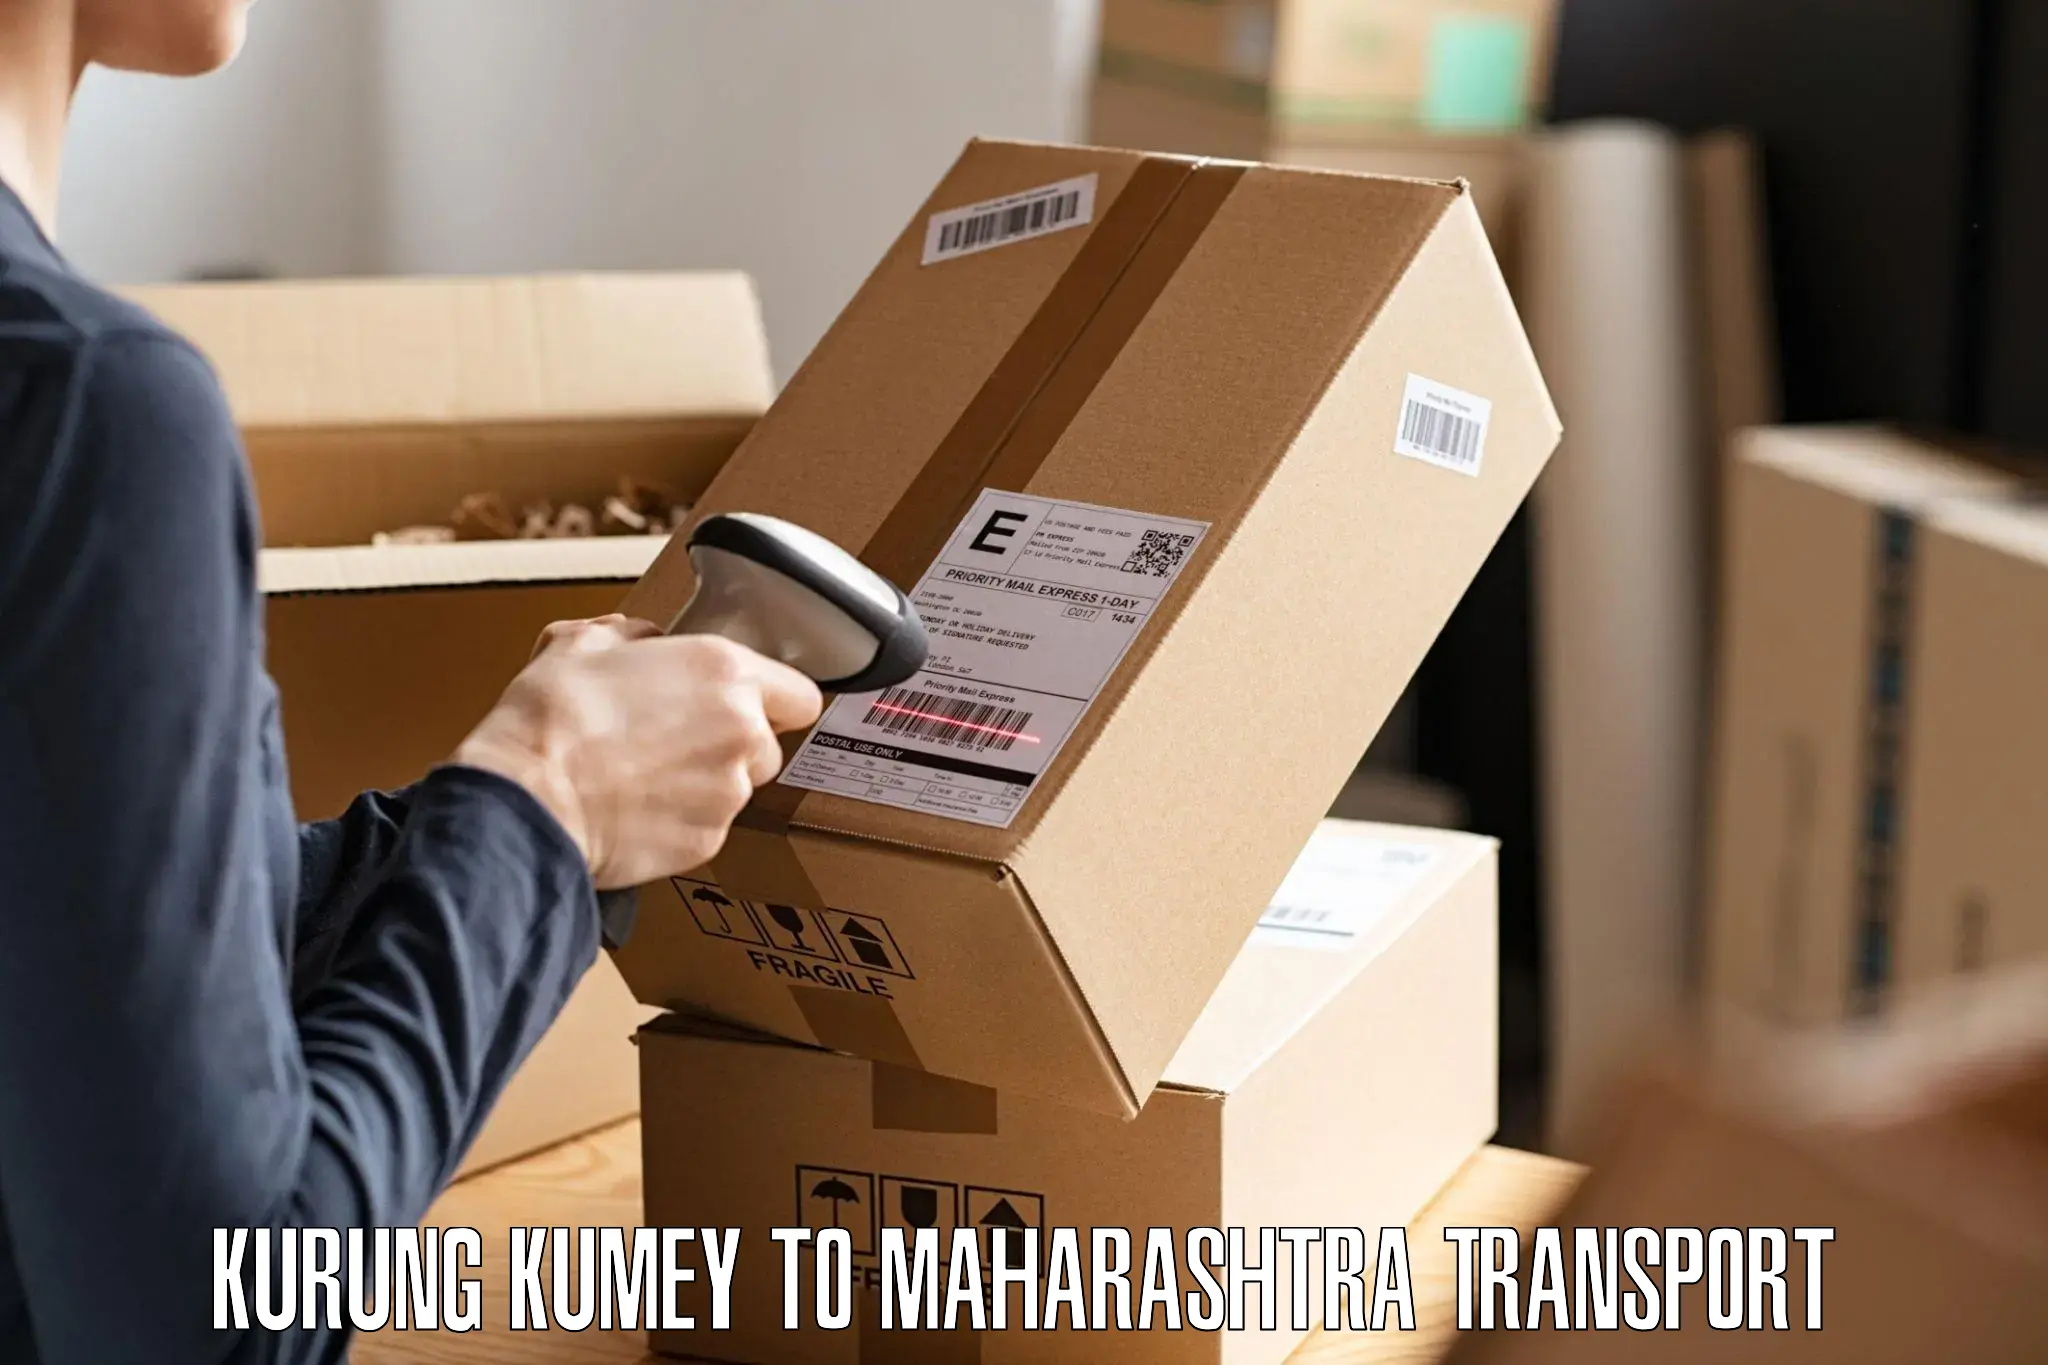 Shipping partner Kurung Kumey to Maharashtra